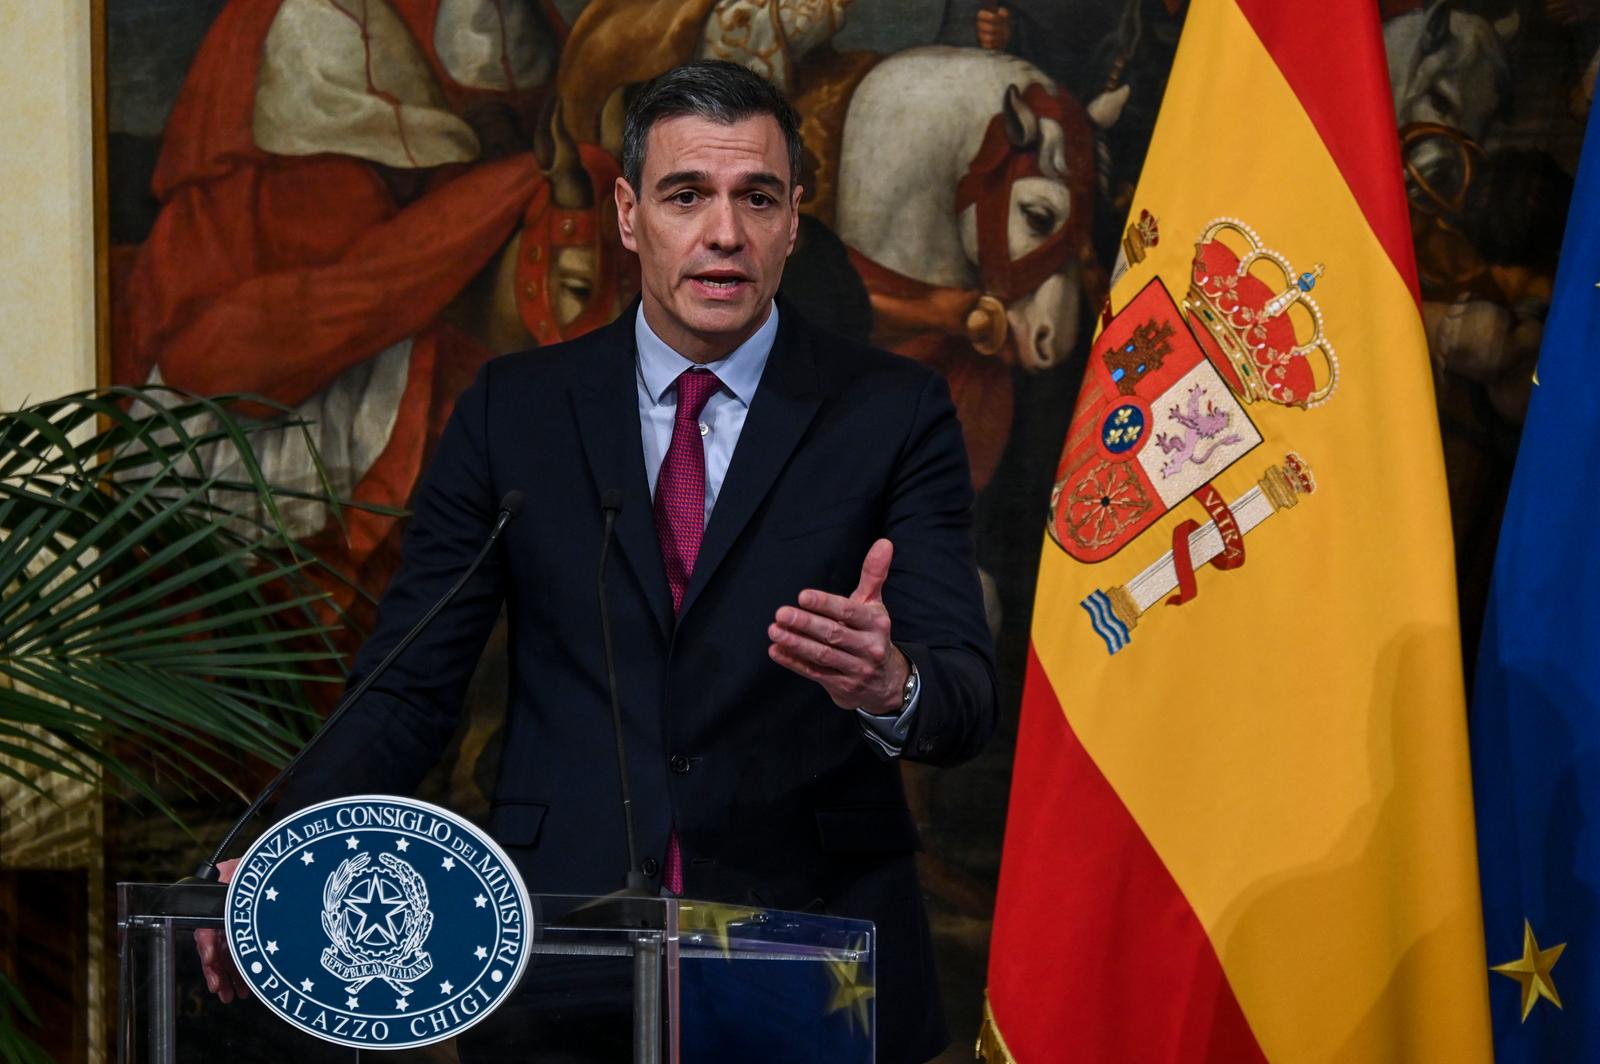 En España, el presidente del Gobierno socialista Sánchez dimite y convoca elecciones anticipadas para el 23 de julio.  El rendimiento del bono disminuye